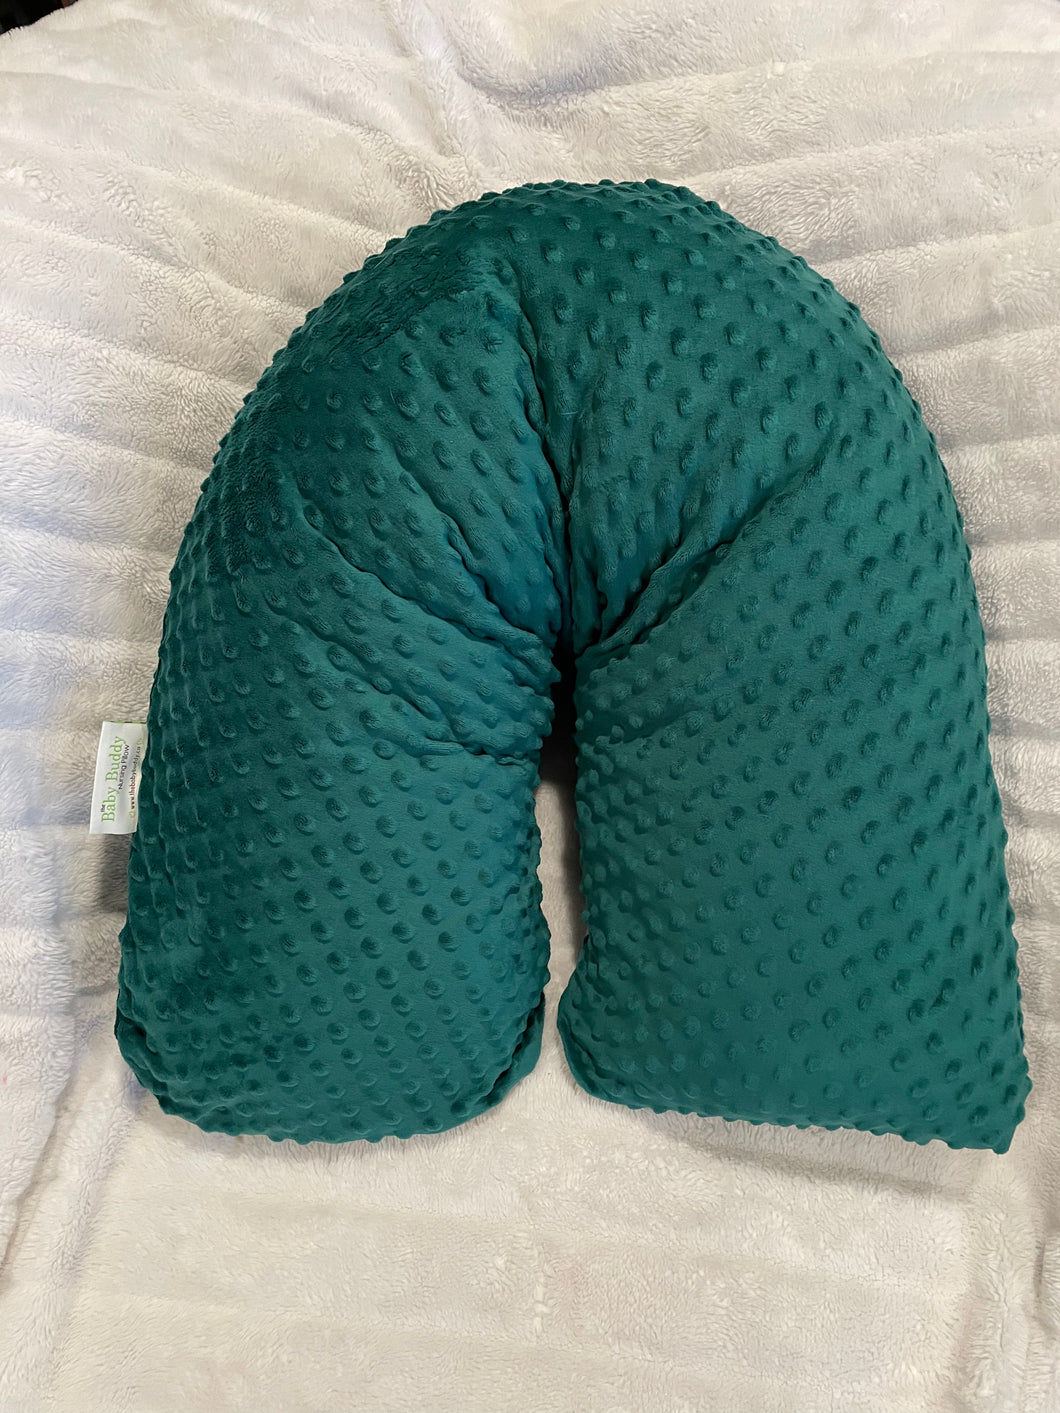 Nursing Pillow - Supersoft Emerald